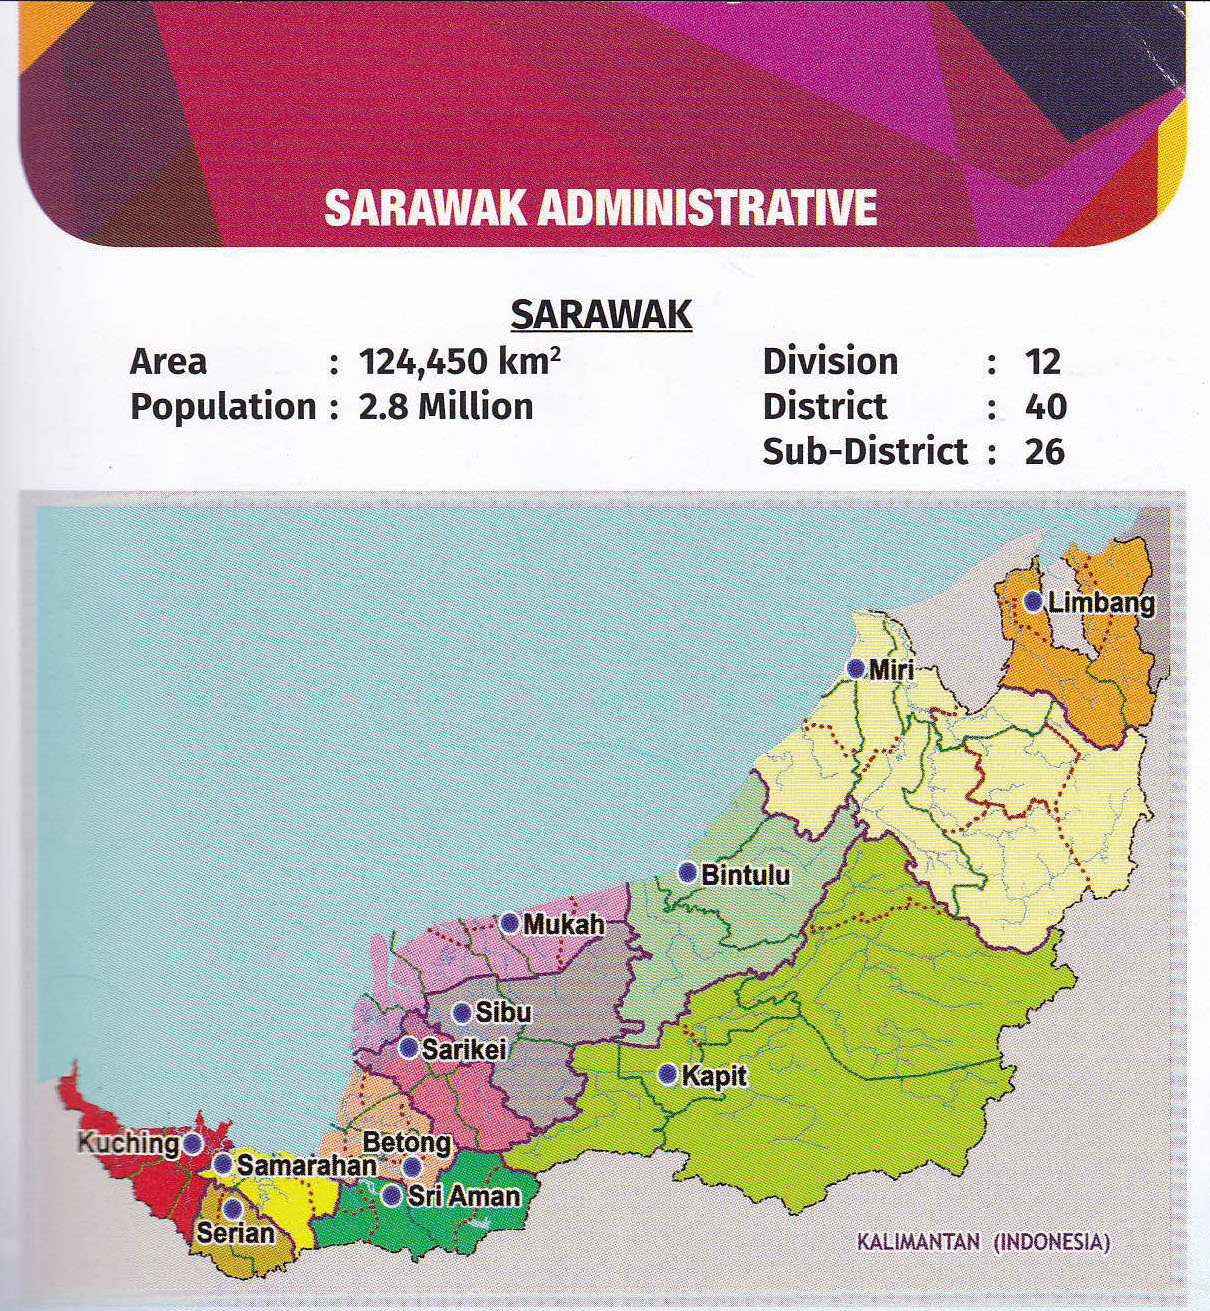 Sarawak population of